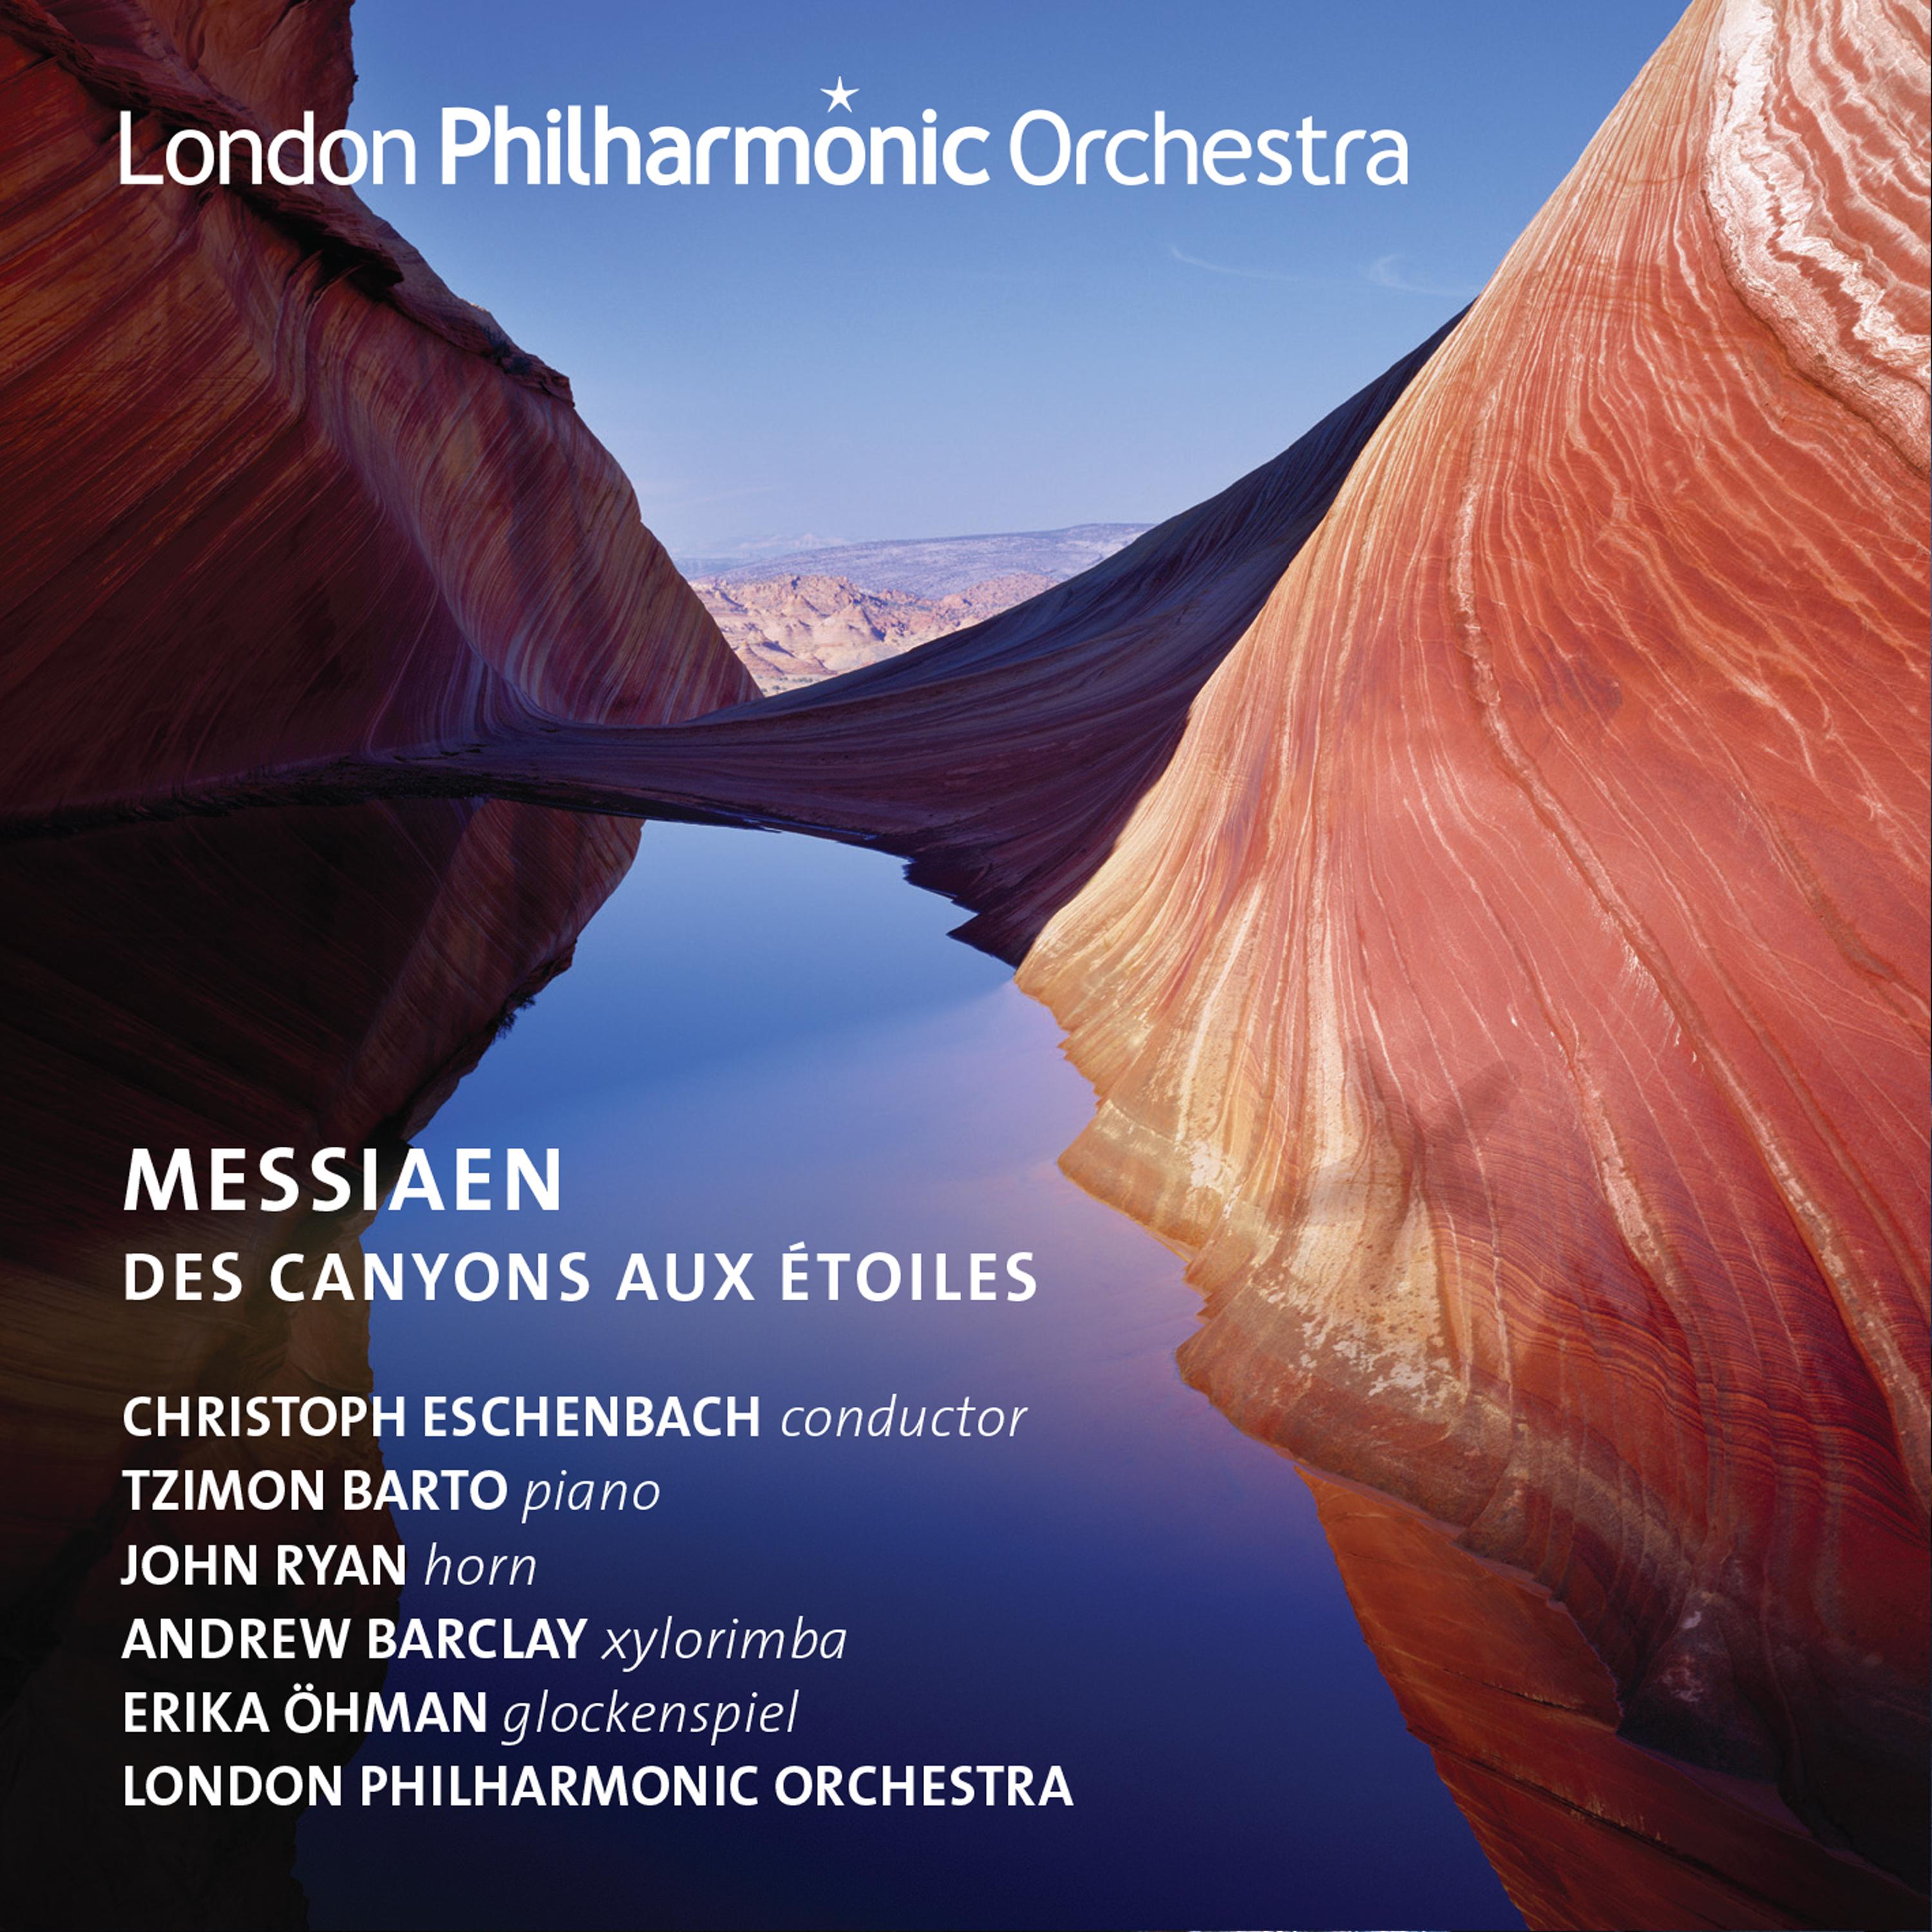 Messiaen: Des Canyons aux e toiles